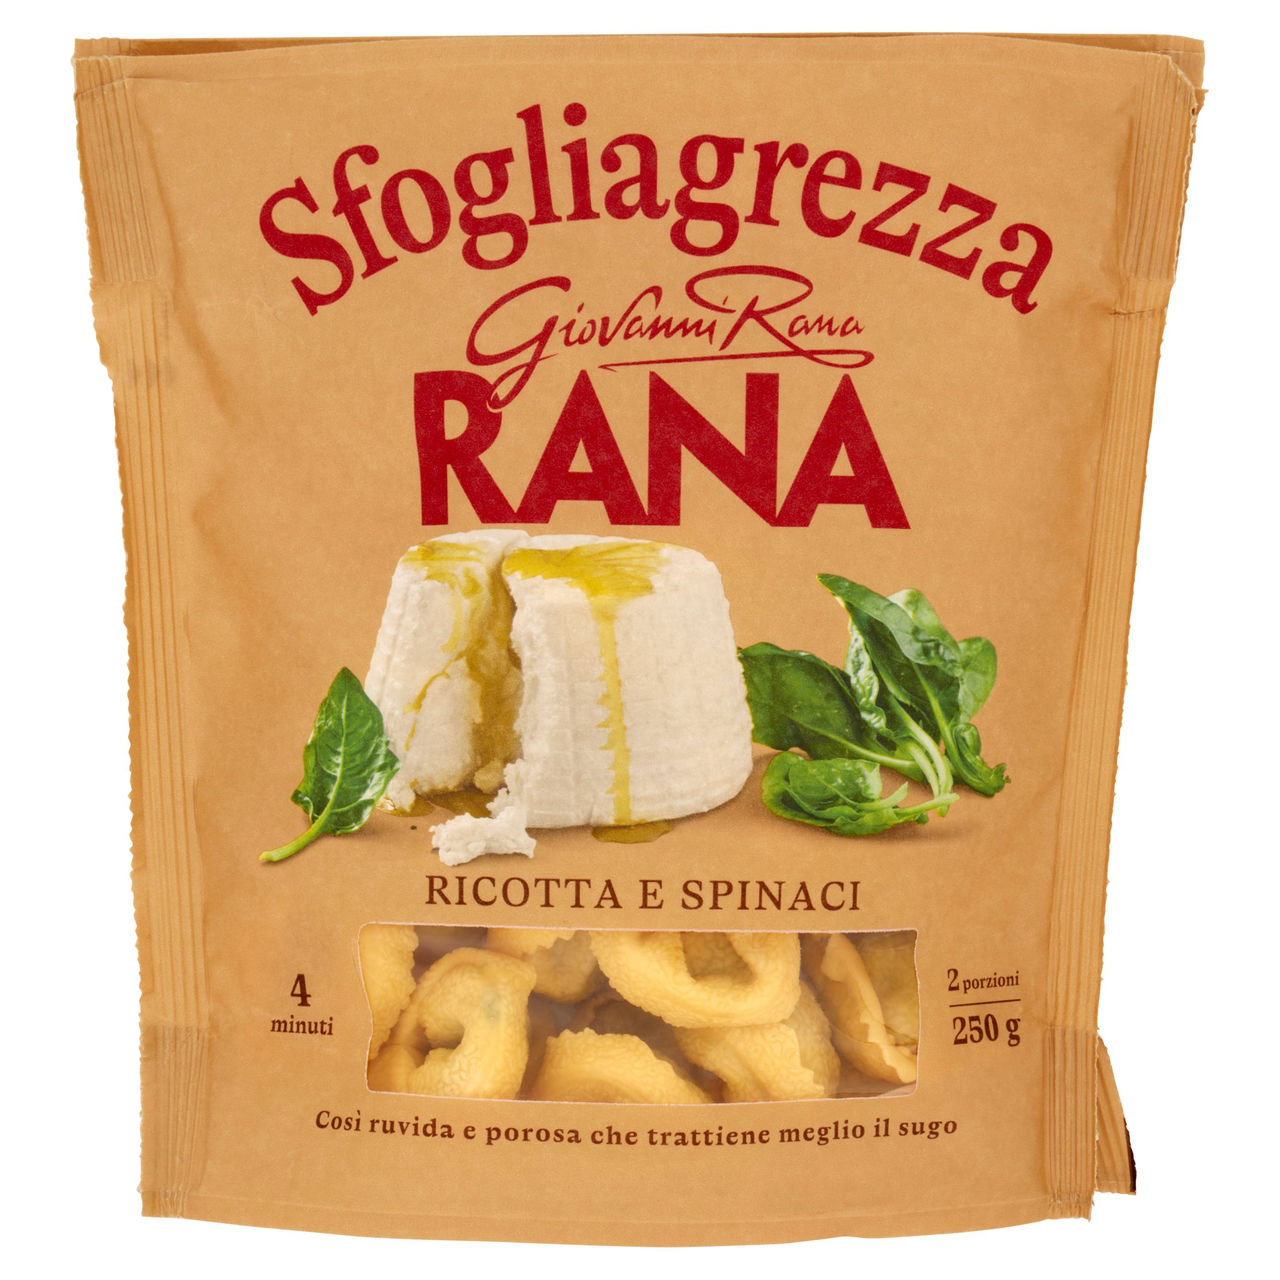 Sfogliagrezza Ricotta Spinaci Rana in vendita online